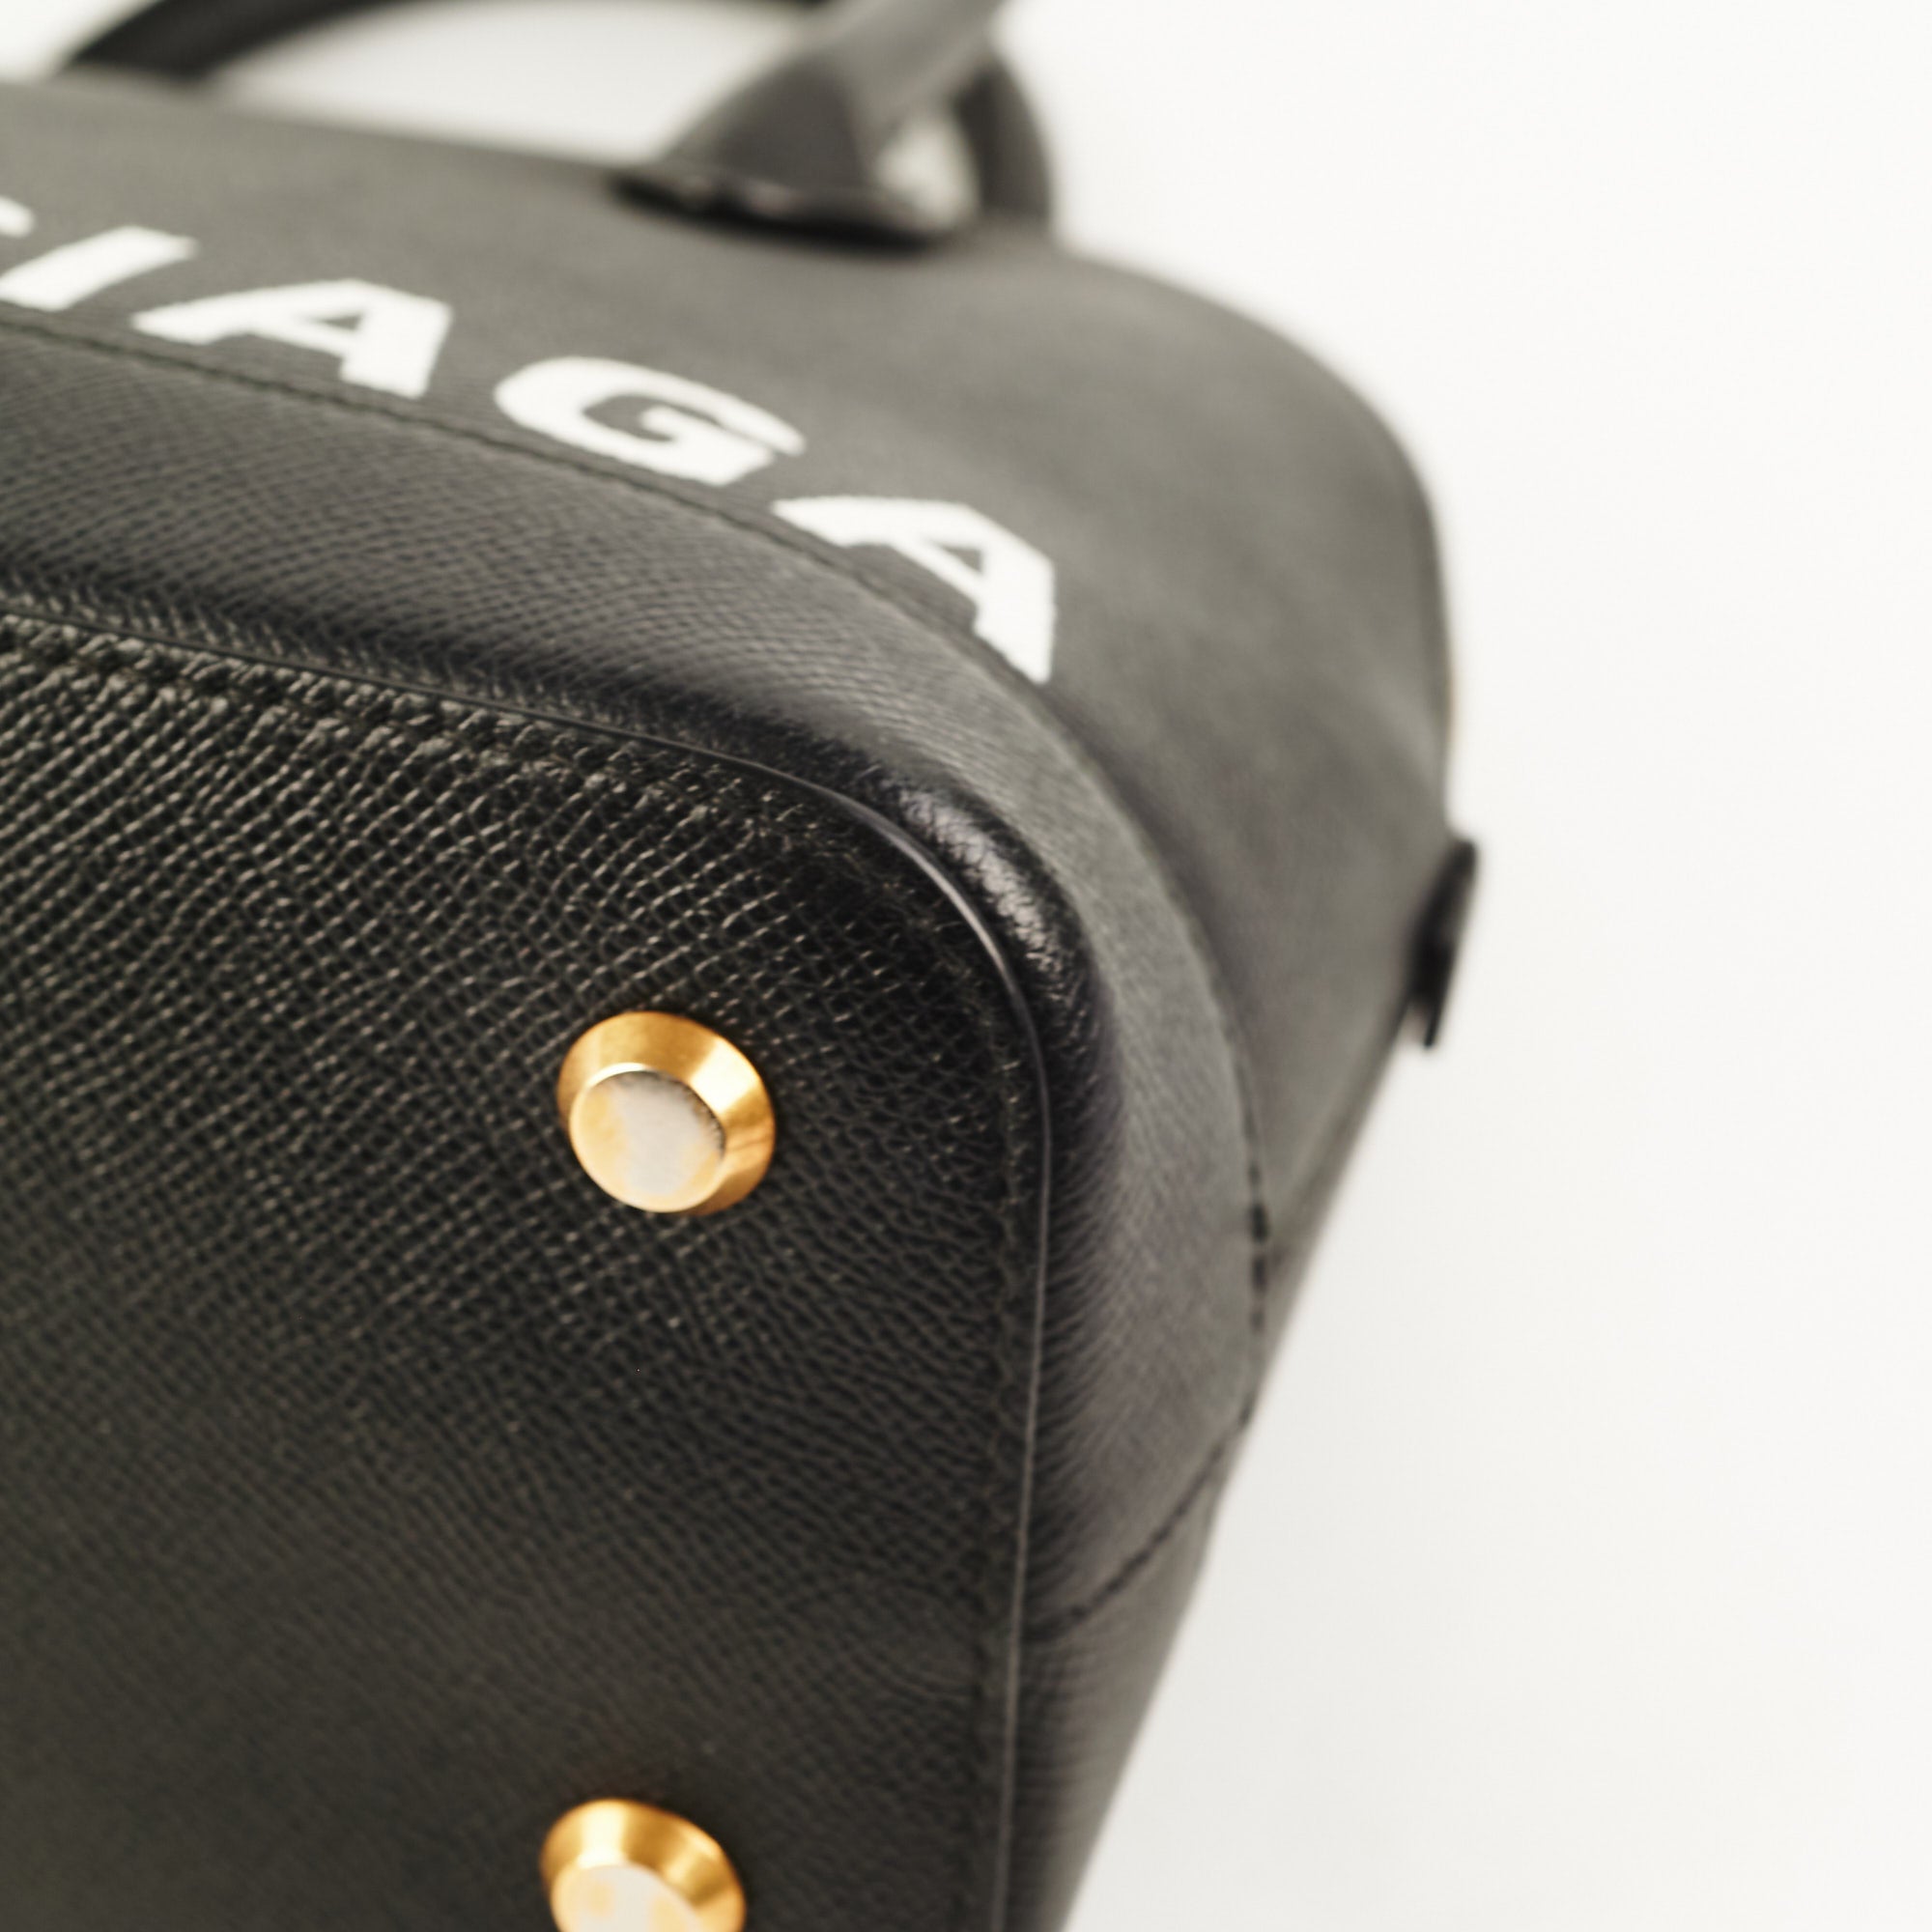 BALENCIAGA-Ville Small Leather Top Handle Bag – Closet NV Shop